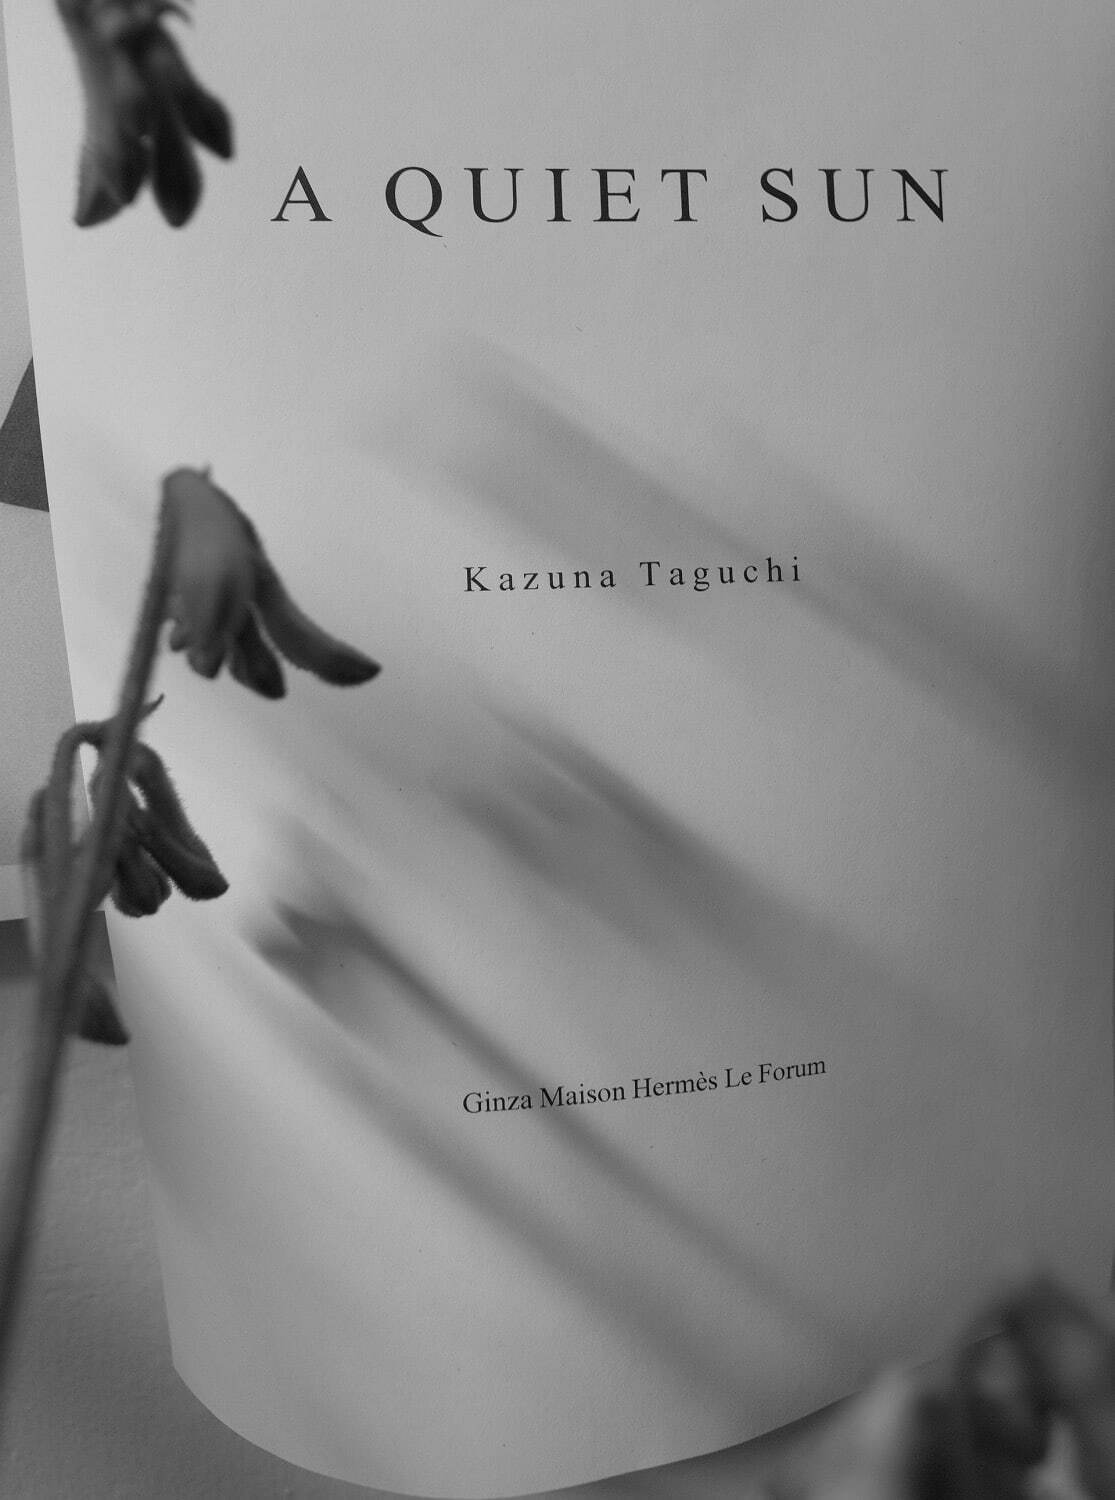 展覧会「A Quiet Sun」のための構想 2022年 ゼラチン・シルバー・プリント サイズ未定
Courtesy of the artist